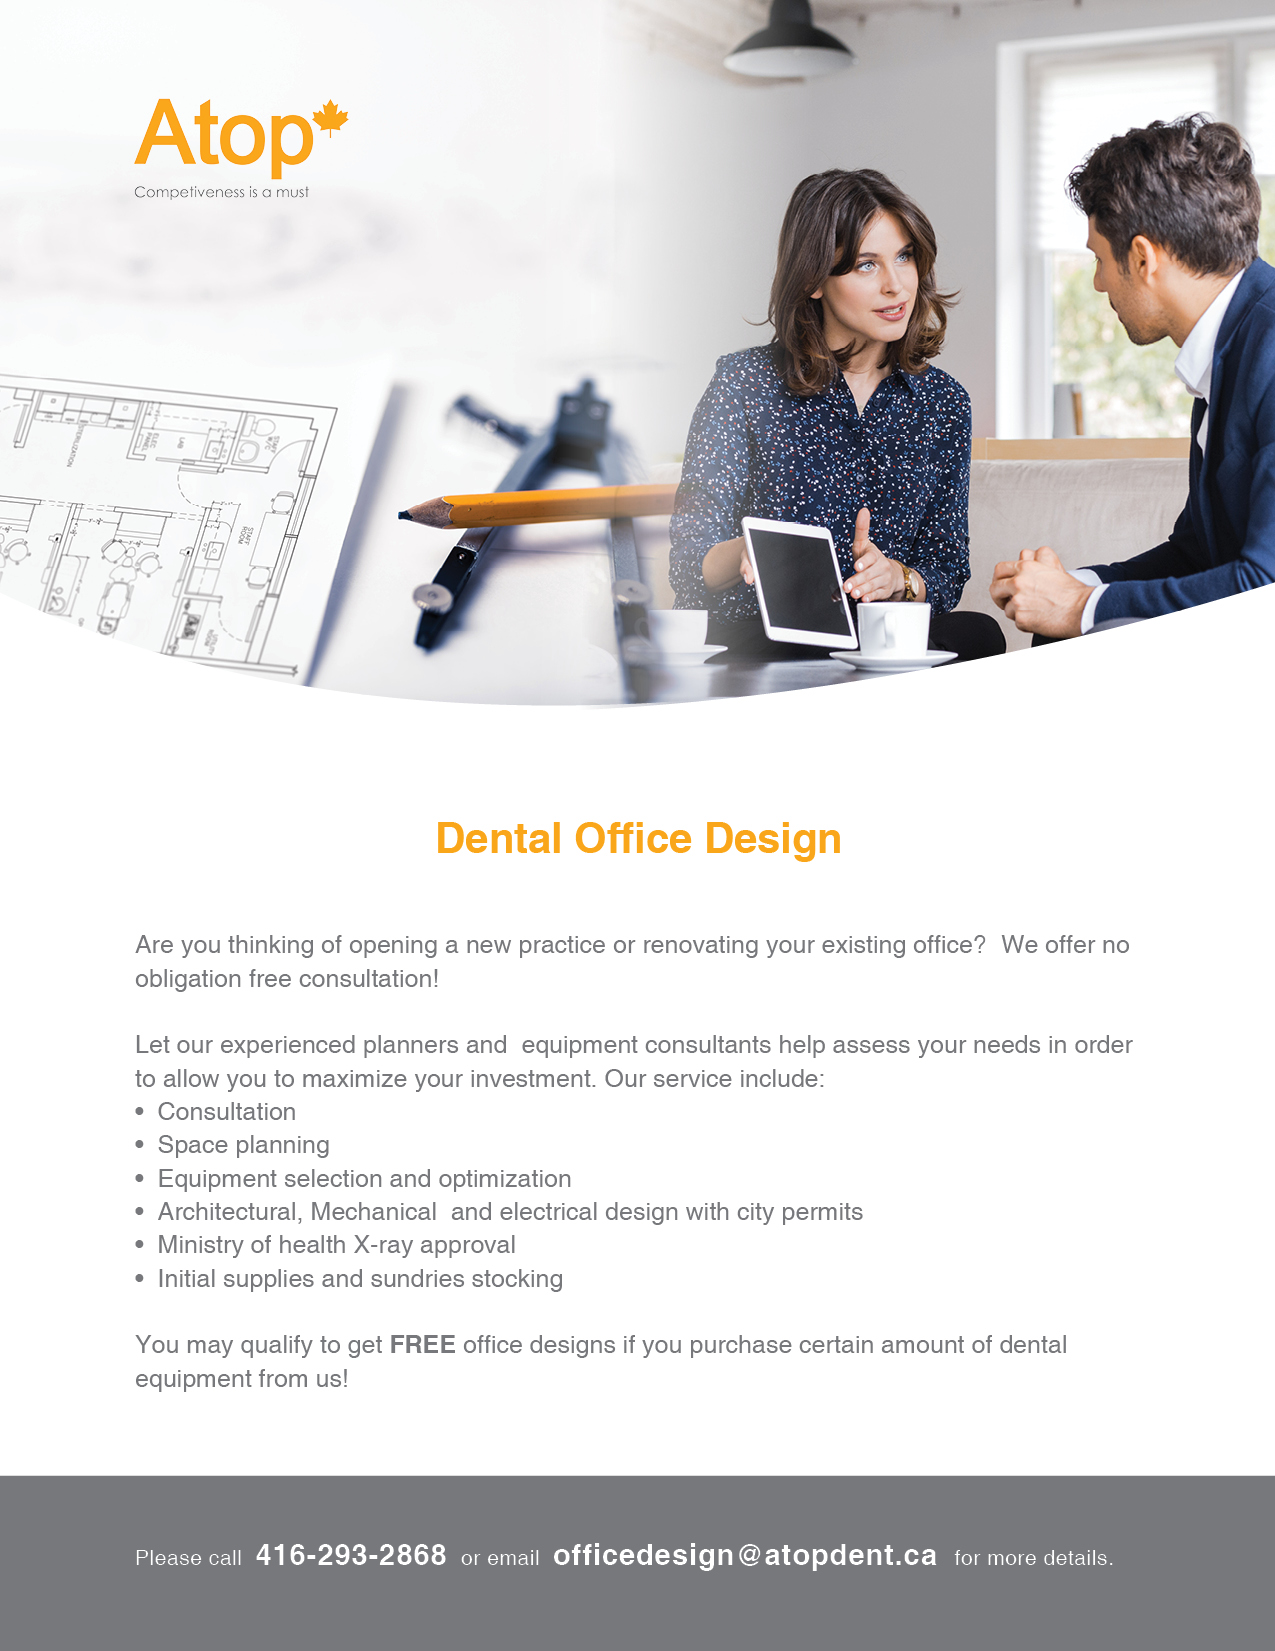 Enf014r1 office design flyer